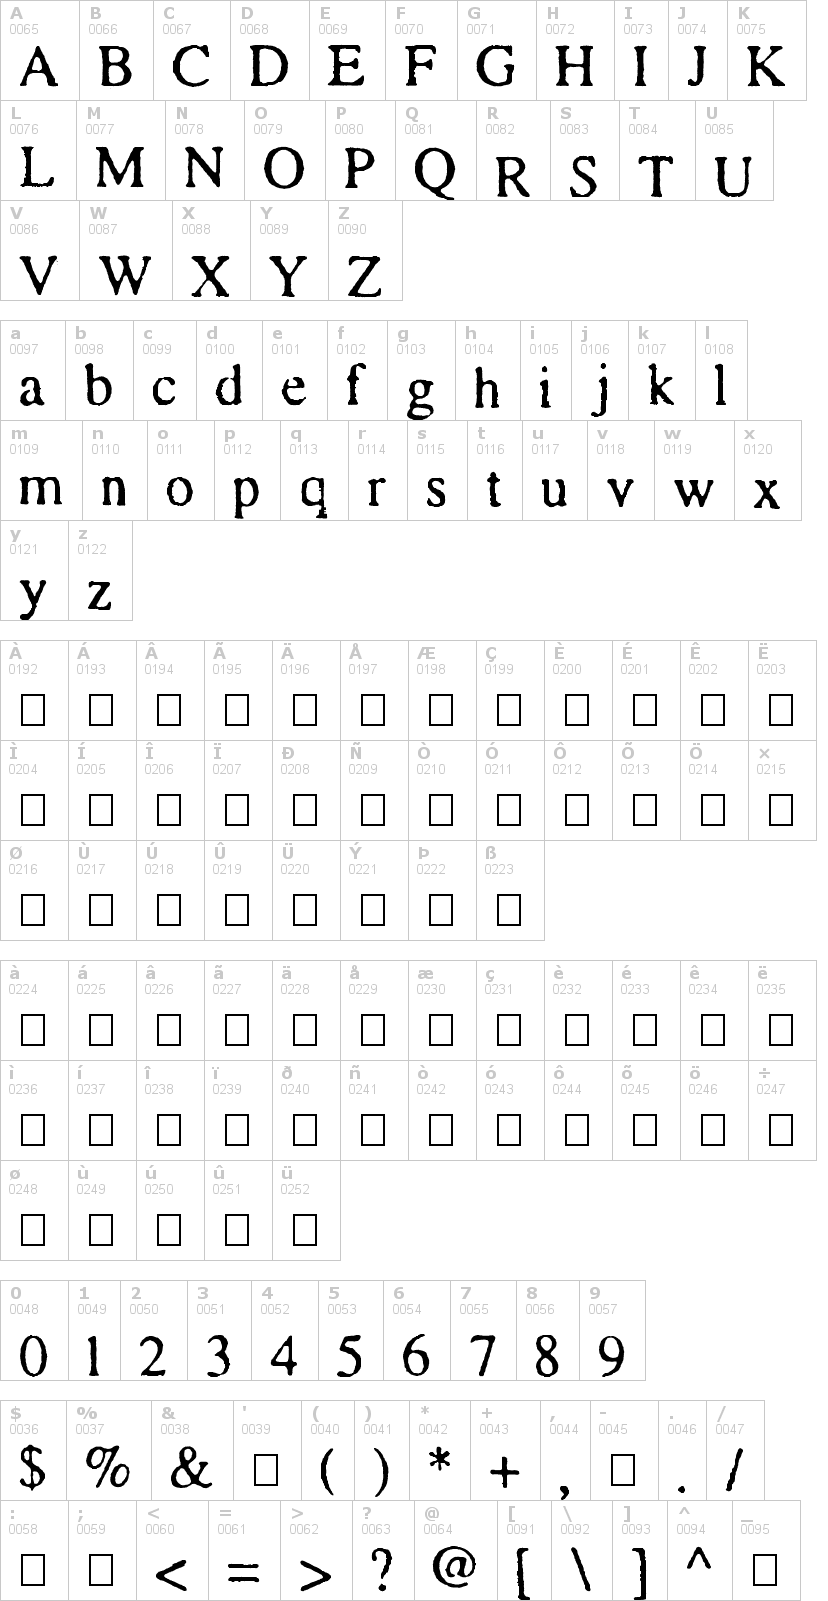 Lettere dell'alfabeto del font times-and-times-again con le quali è possibile realizzare adesivi prespaziati